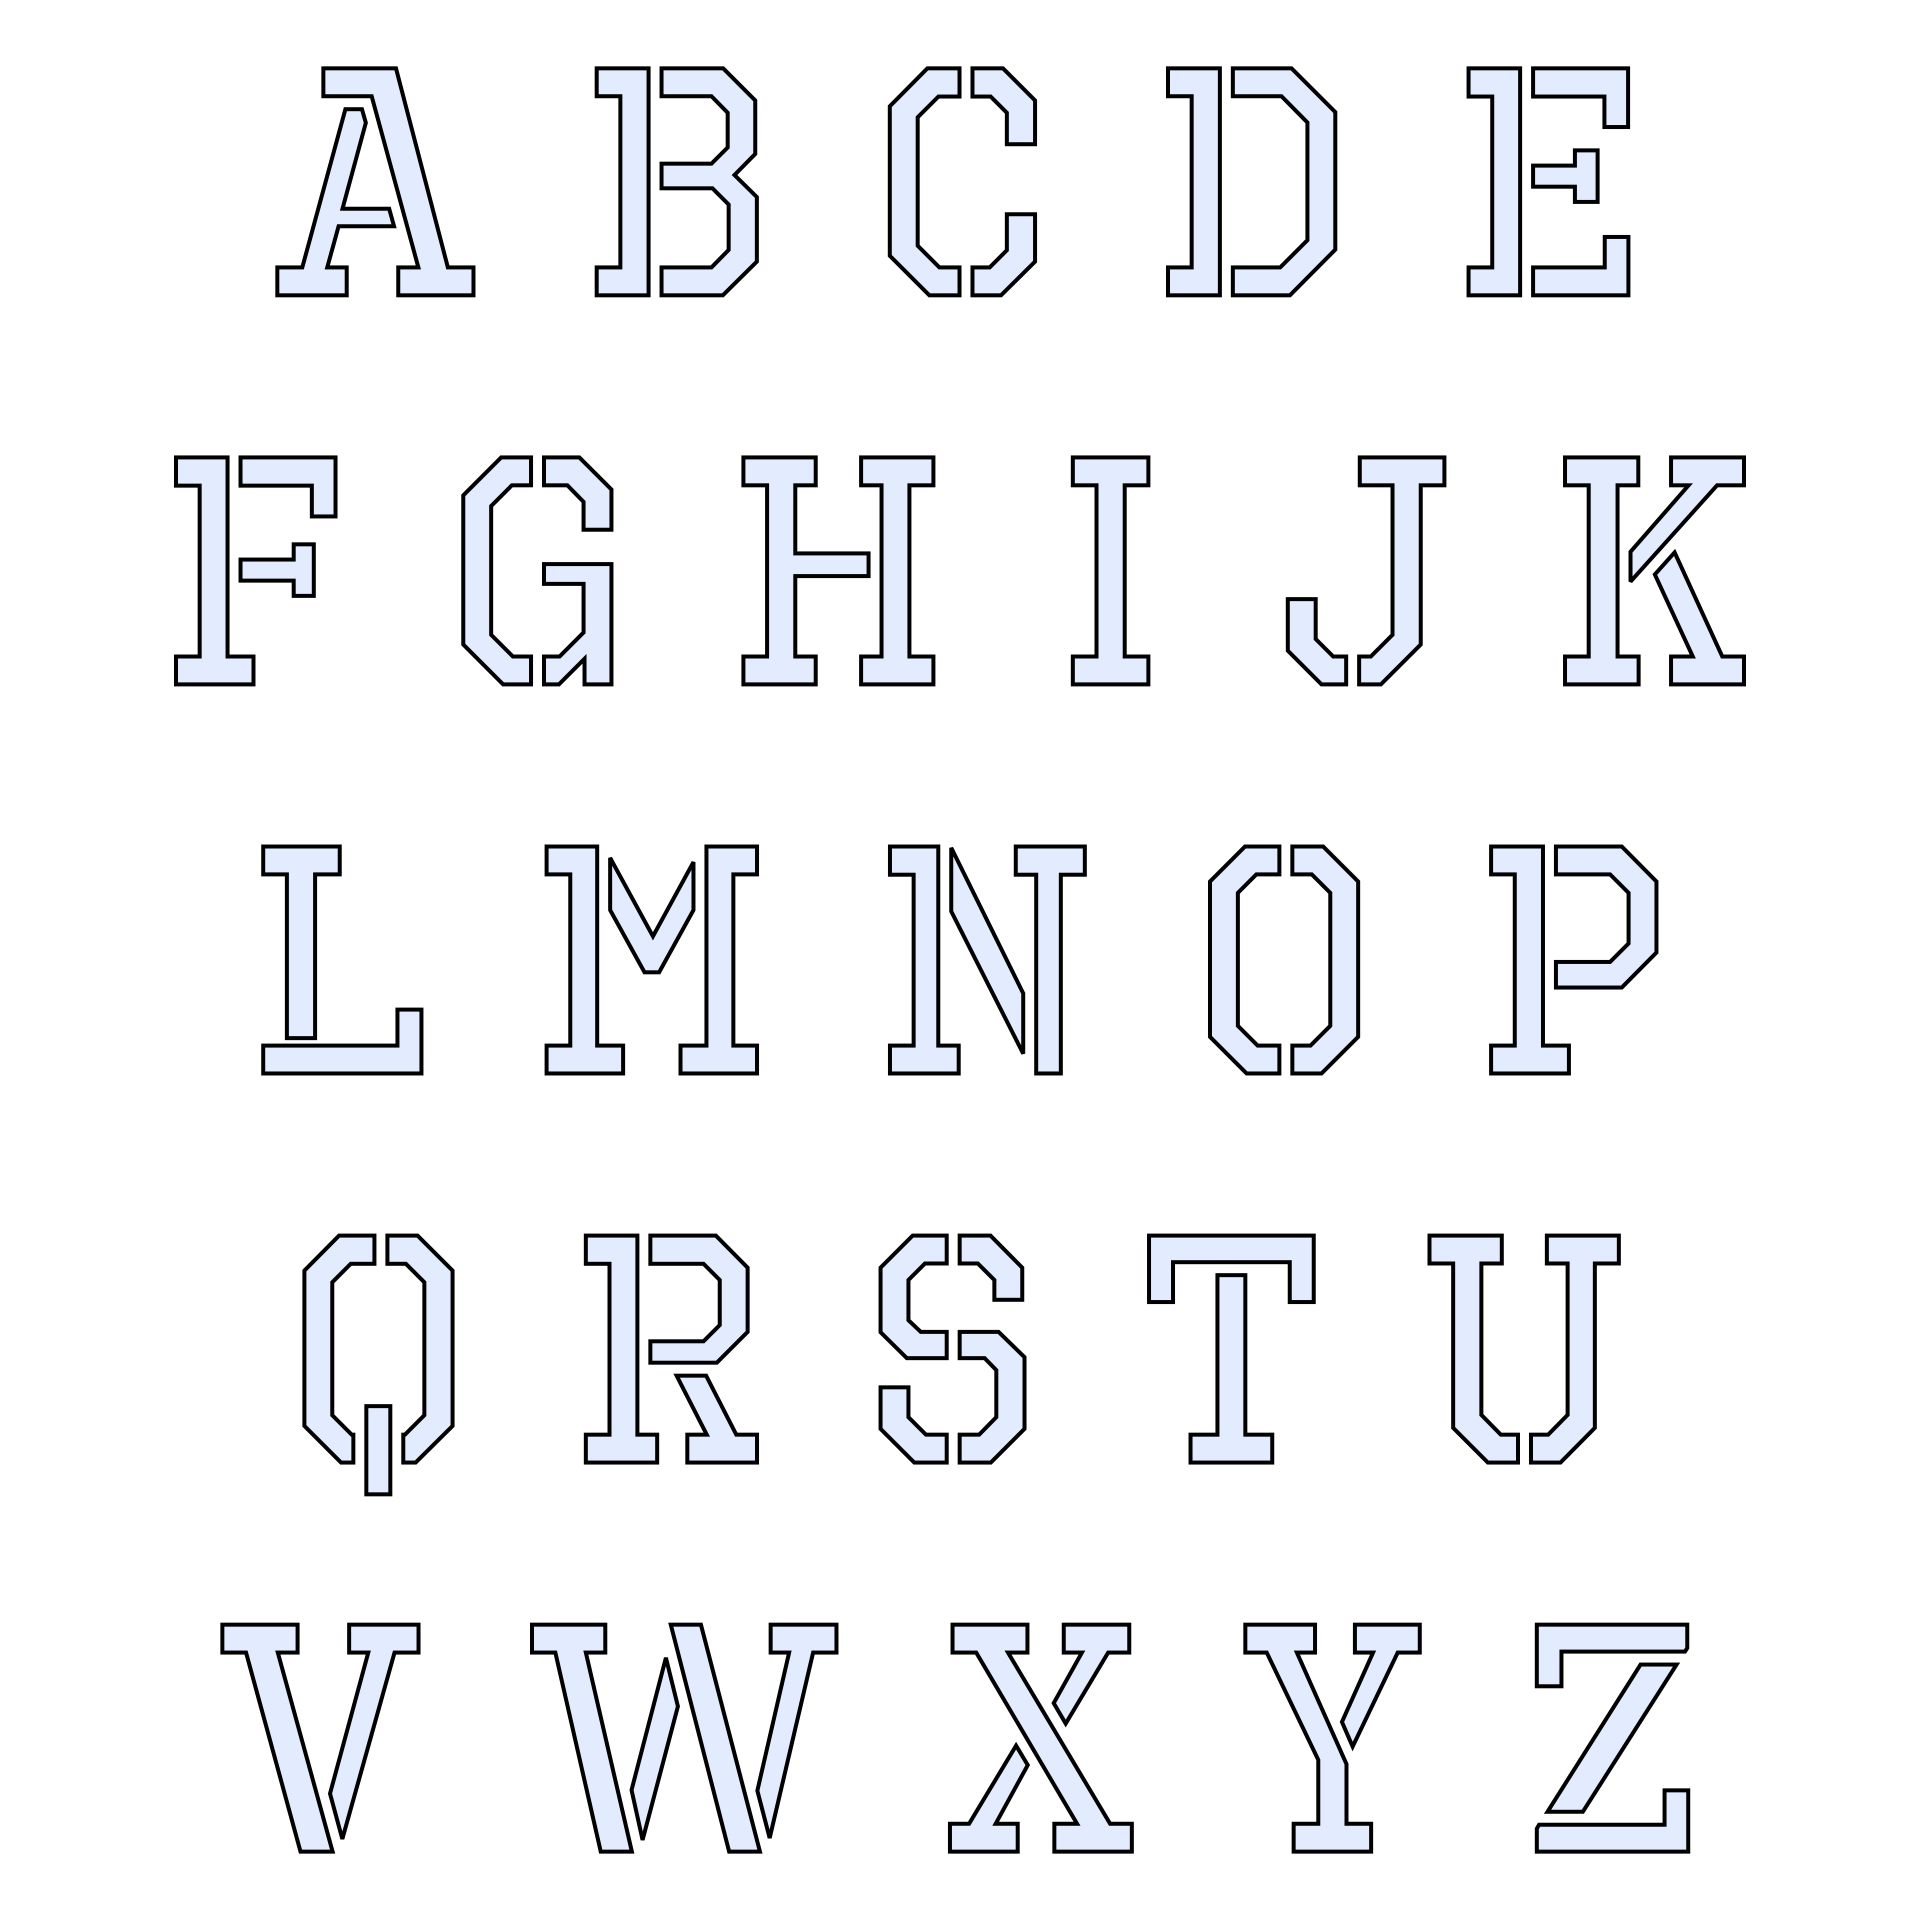 cut-out-printable-3d-alphabet-letters-template-printable-3d-net-font